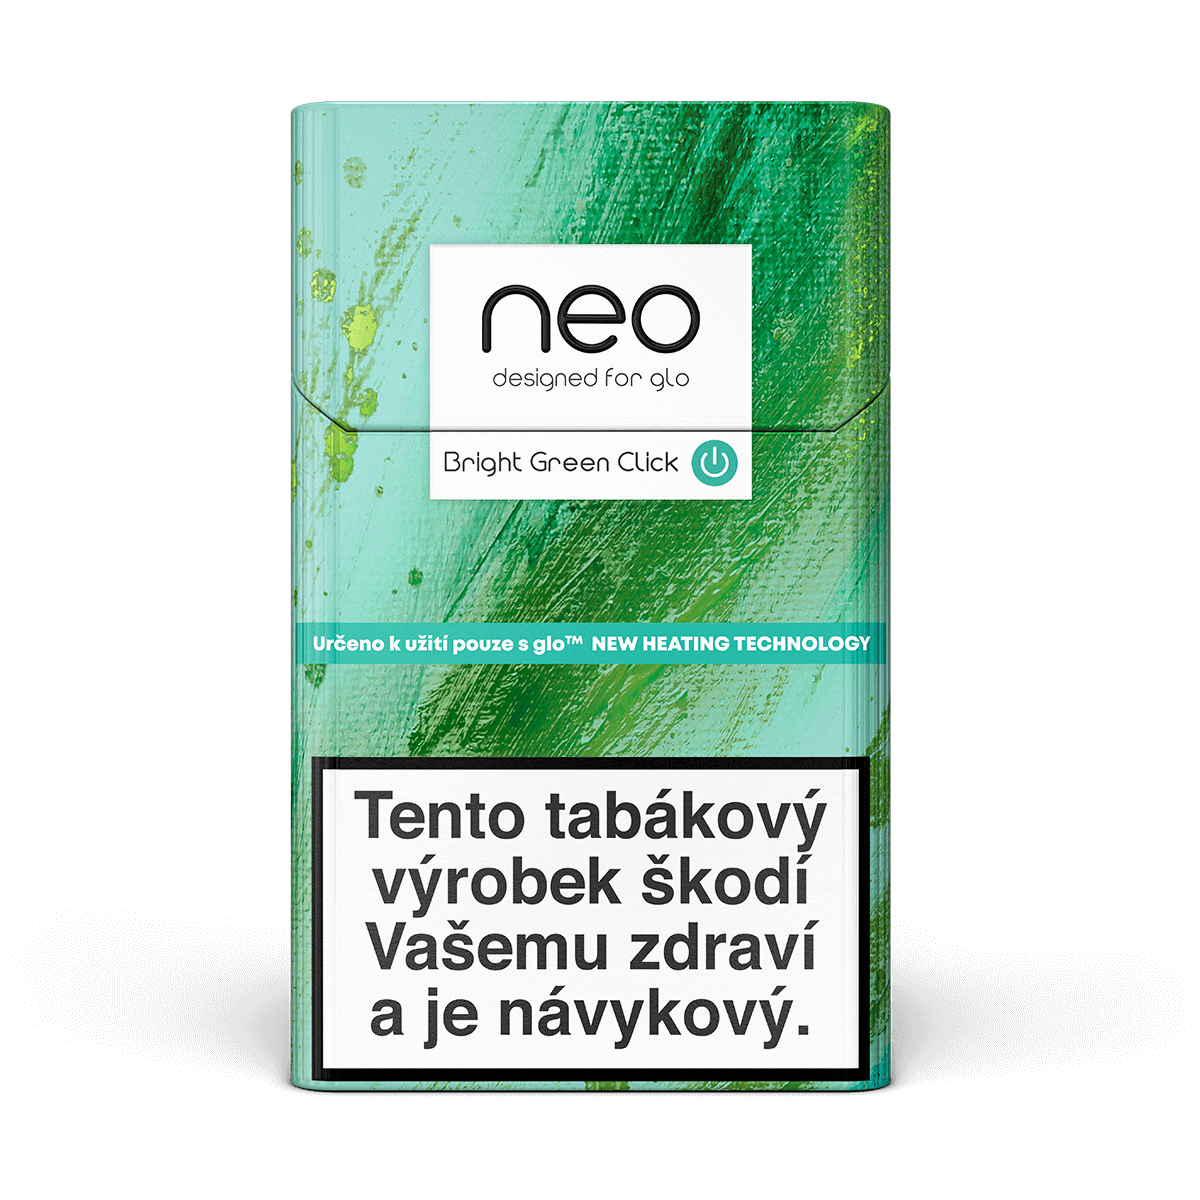 neo™ Bright Green Click